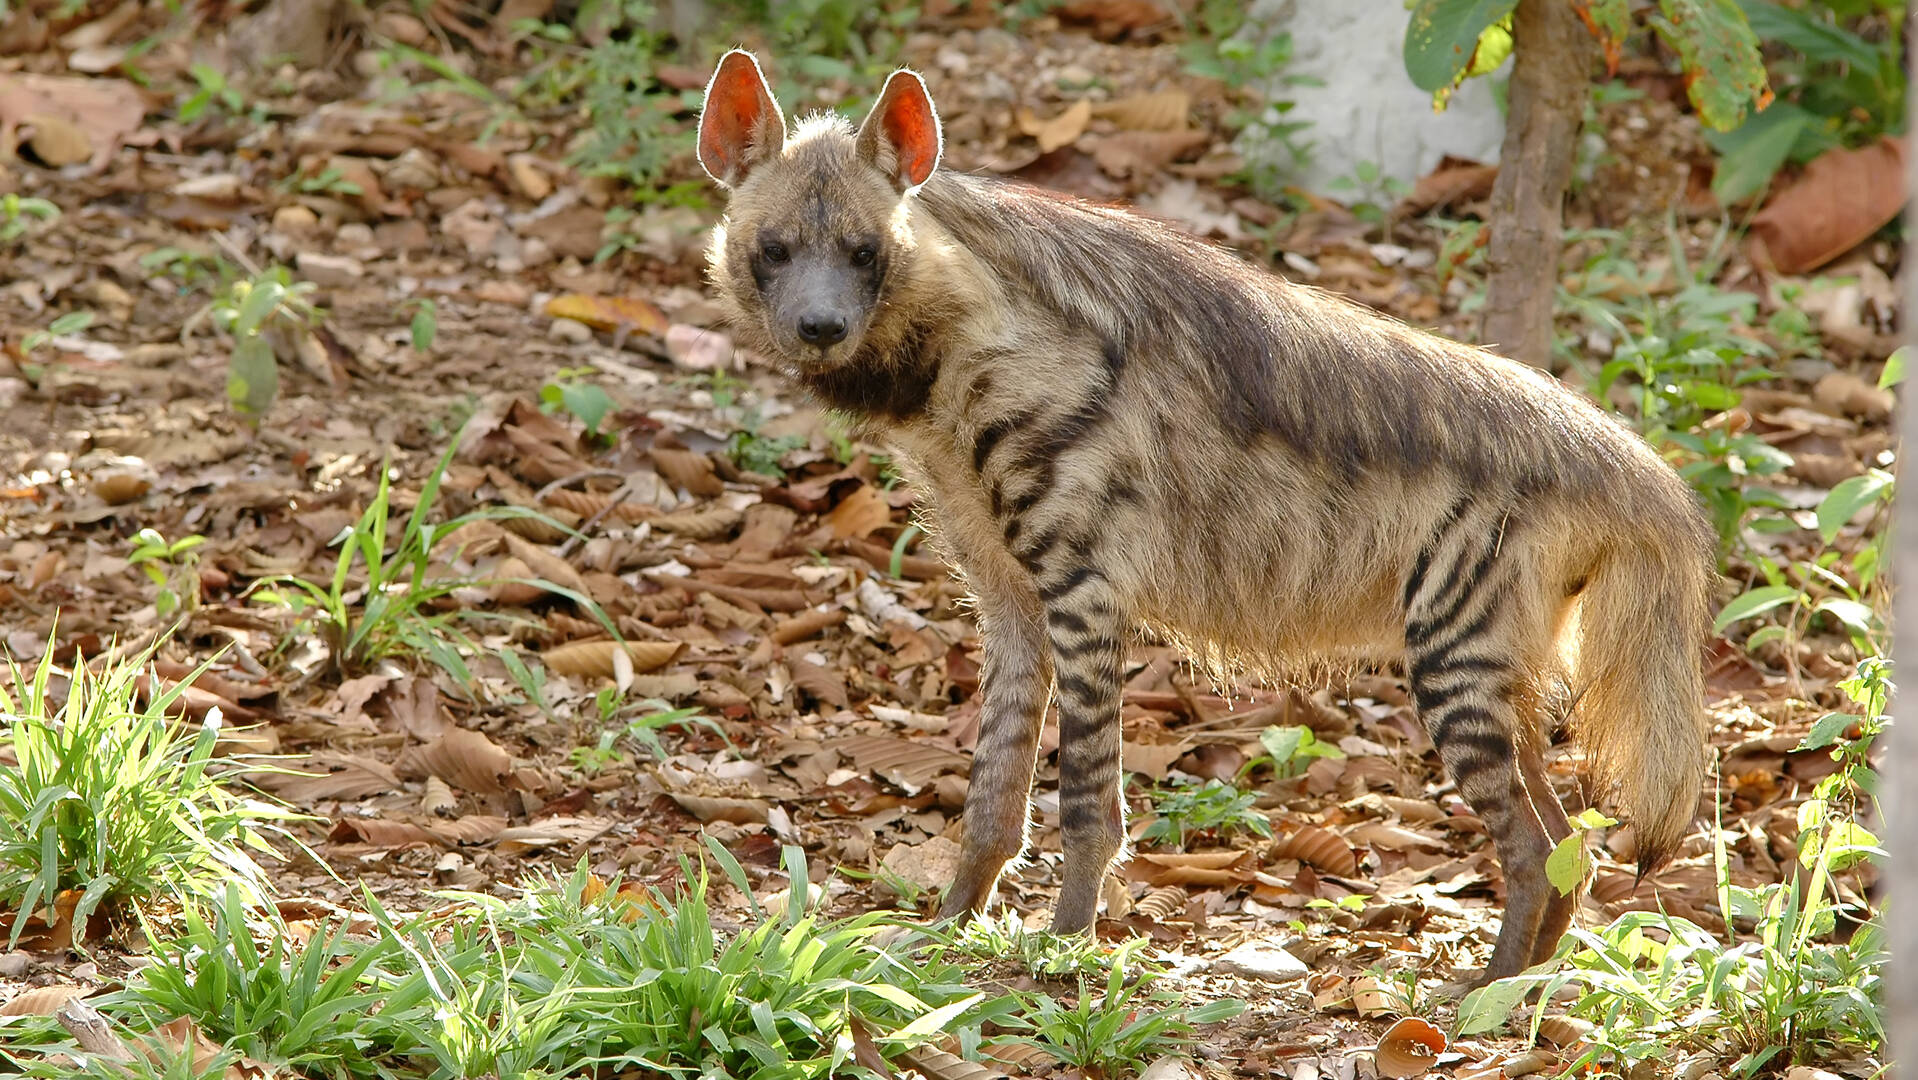 Striped Hyena